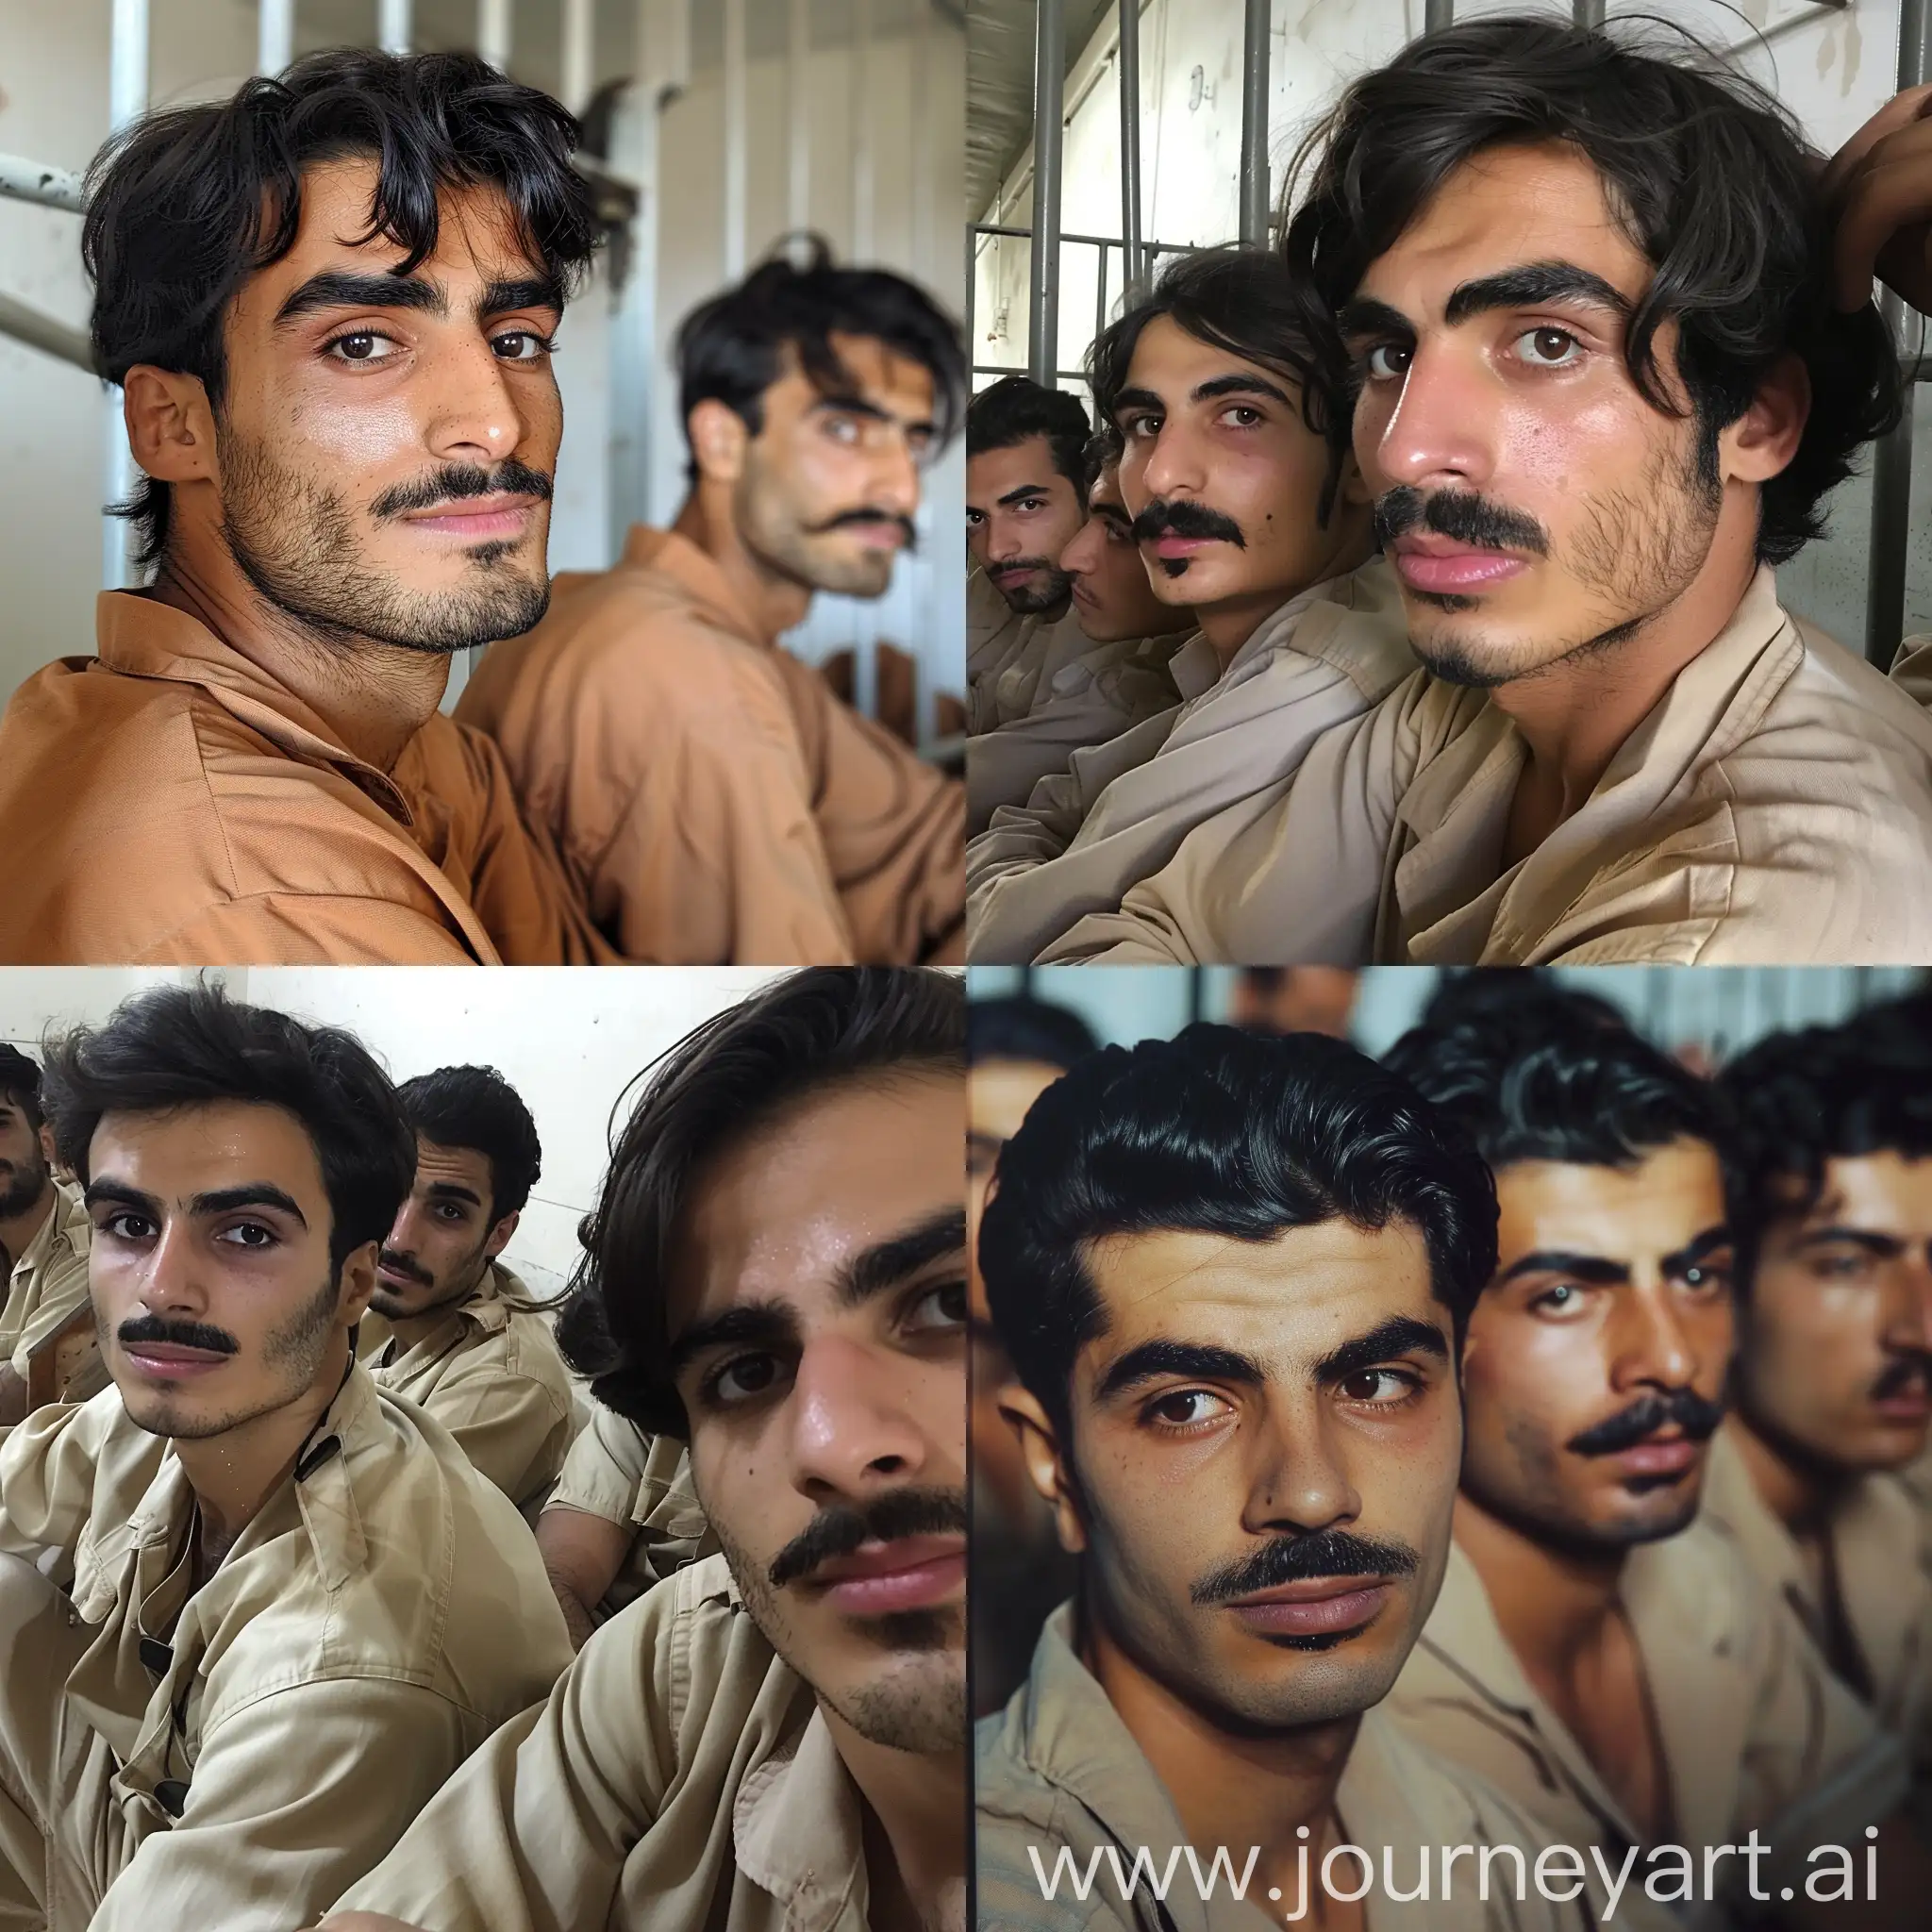 Красивые смуглые иранские парни с чёрными волосами, карими глазами и усами сидят в тюрьме в Дубае